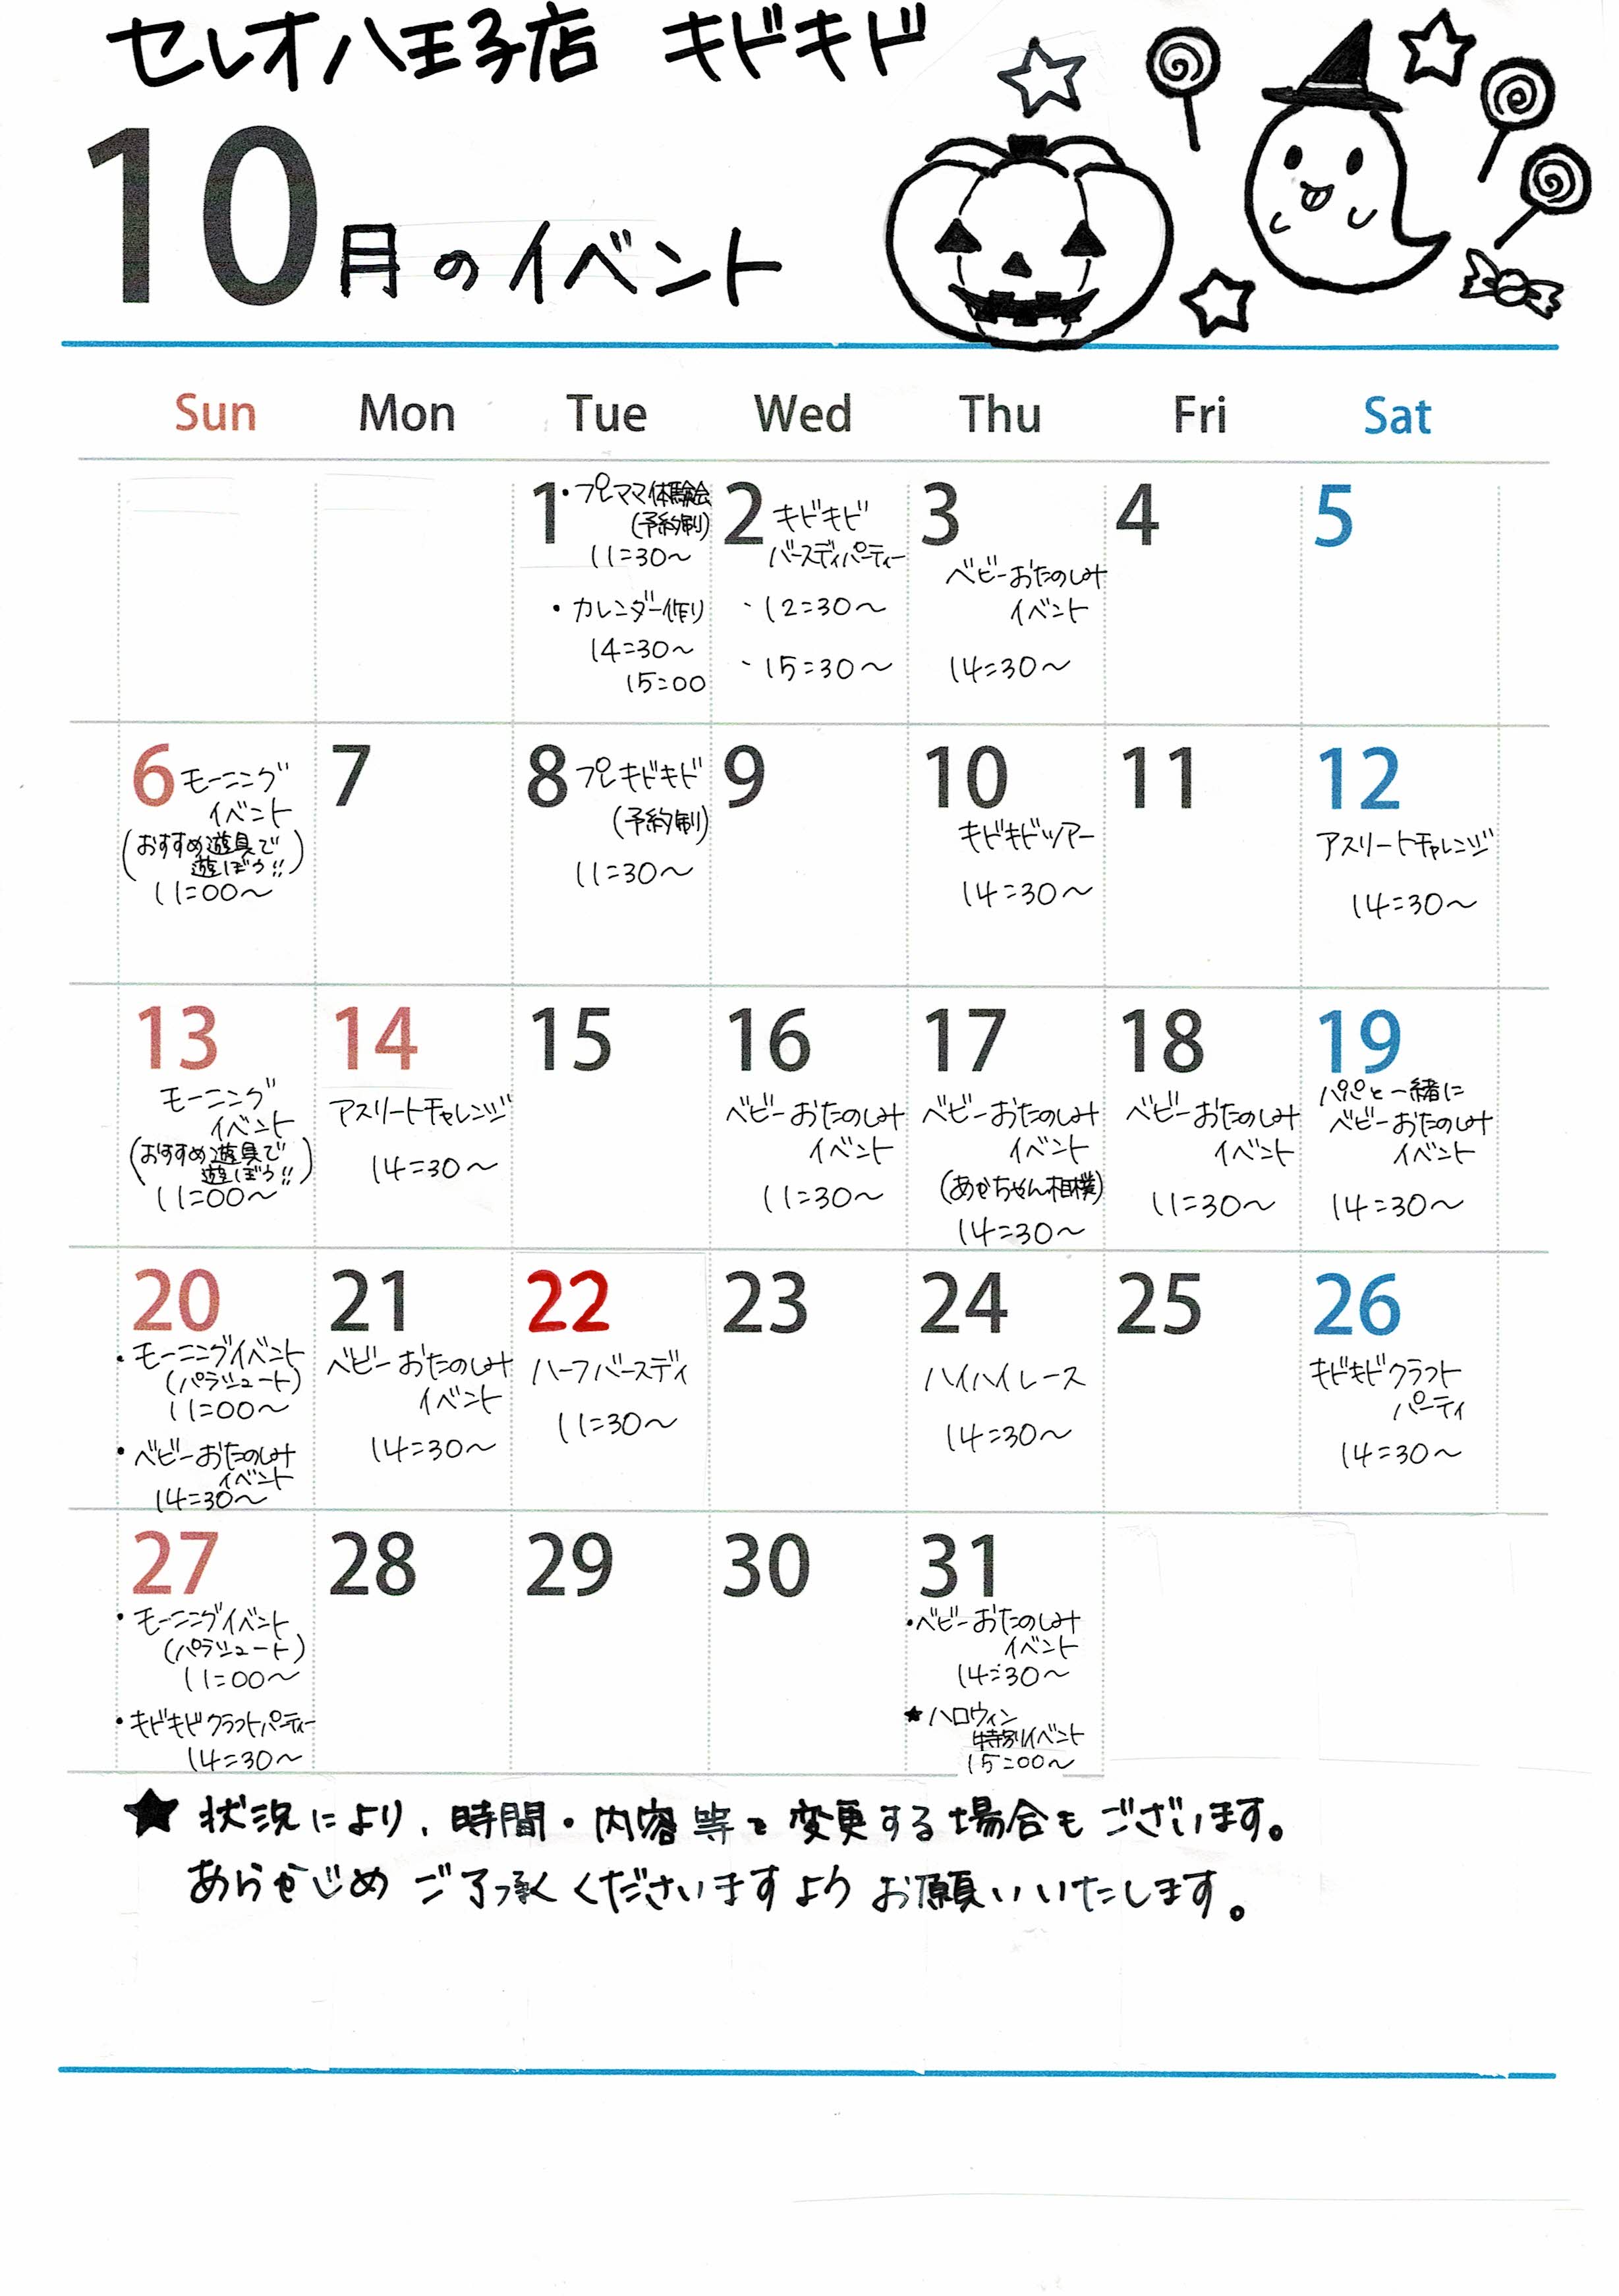 ☆10月のイベントカレンダー☆